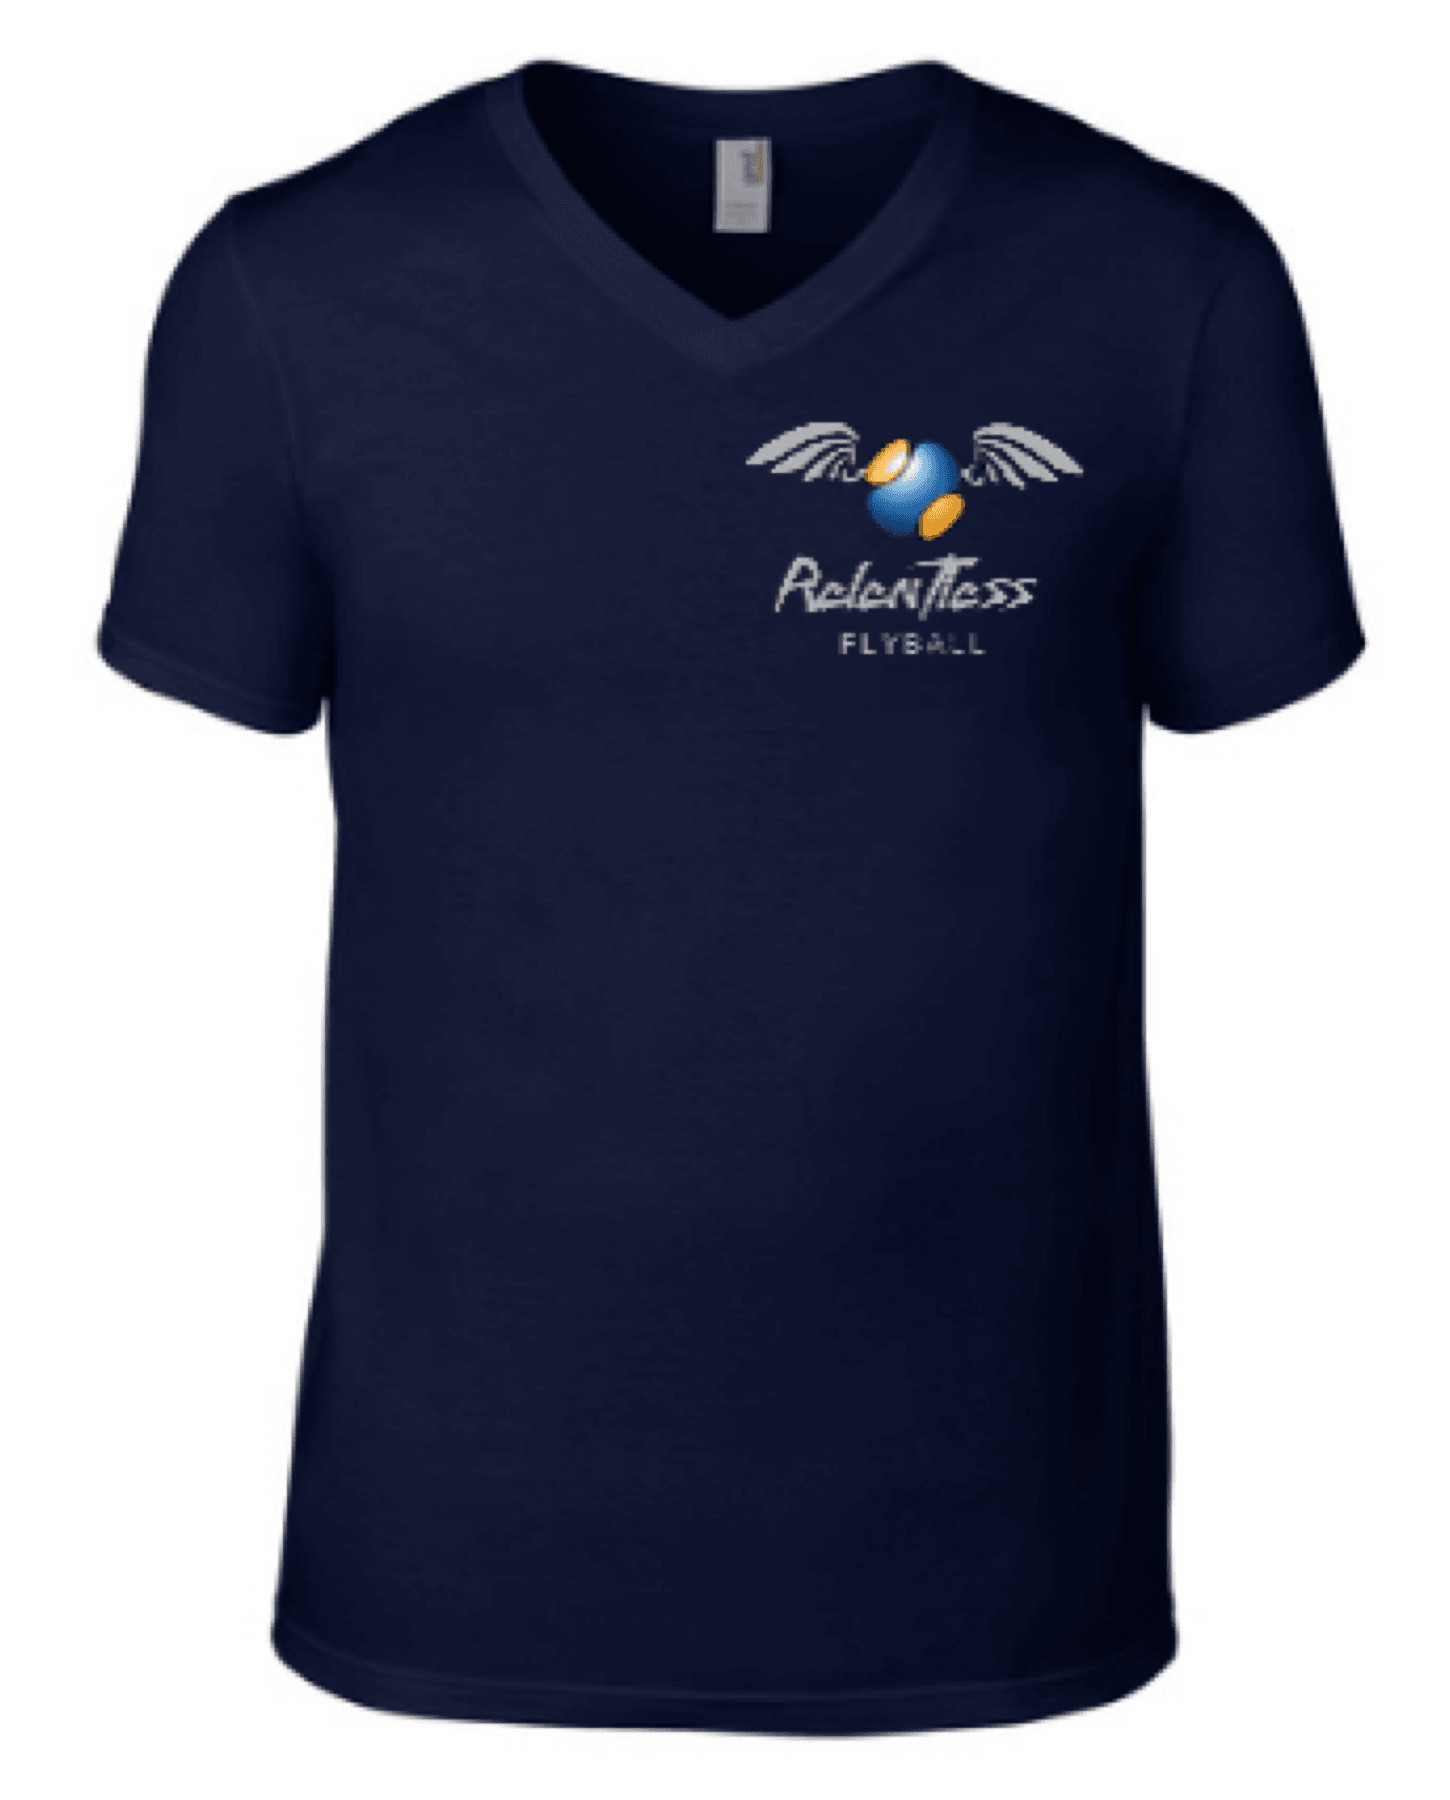 Relentless Flyball – V Neck T-shirt Unisex